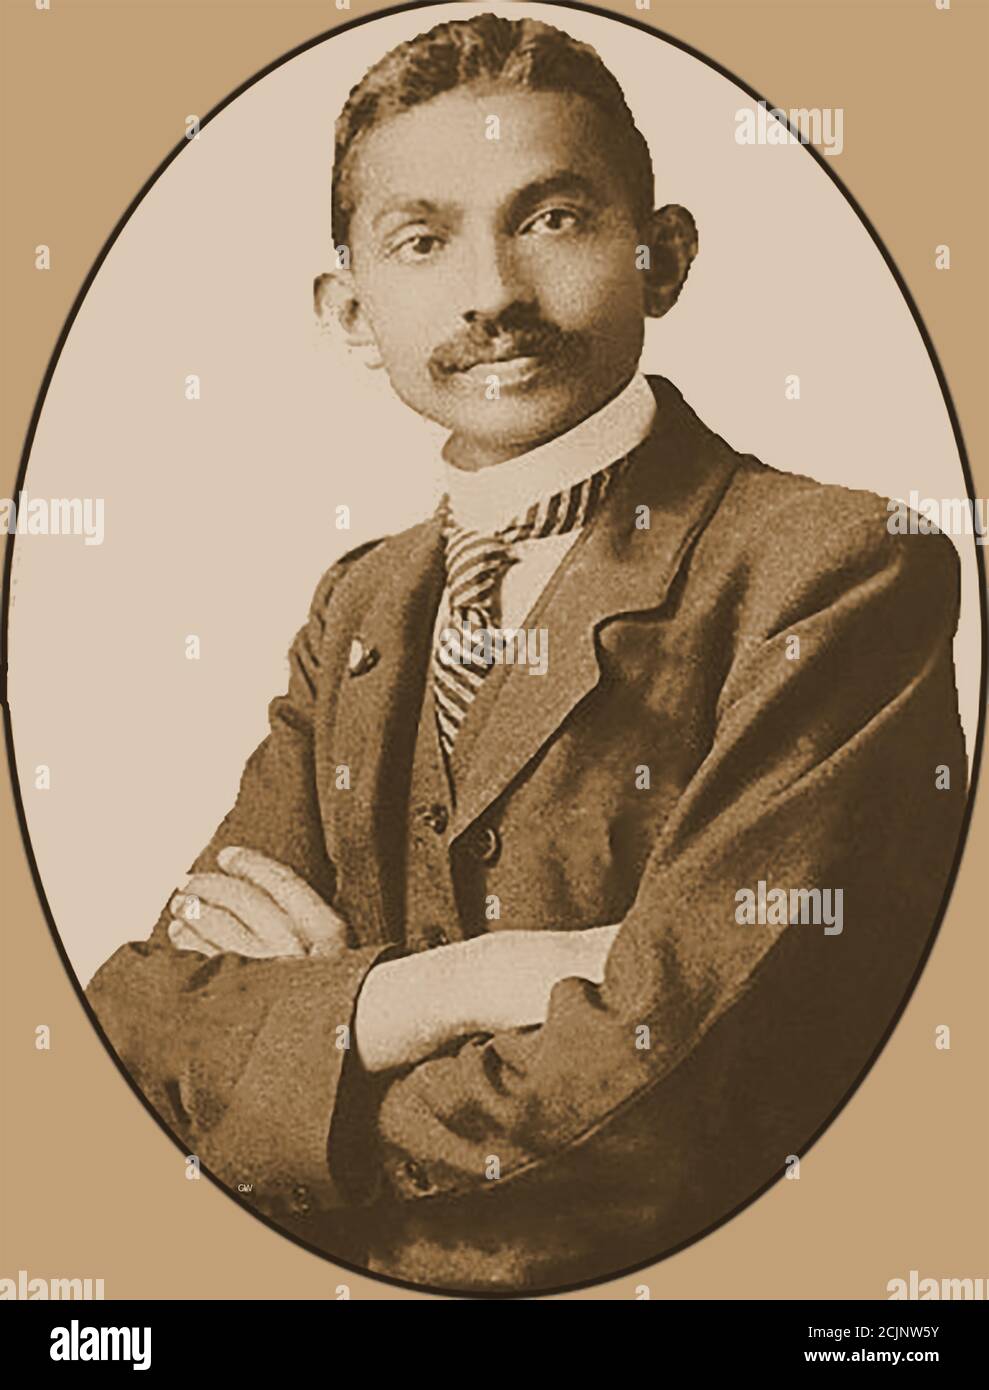 Un ritratto di un giovane Mahatma Gandhi (37 anni) -- Mohandas Karamchand Gandhi (1869 – 1948) è stato un avvocato indiano, attivista per i diritti civili, nazionalista anti-coloniale ed eticista politico, famoso per la sua resistenza nonviolenta nella sua campagna di successo per l'indipendenza dell'India dal governo britannico. Foto Stock